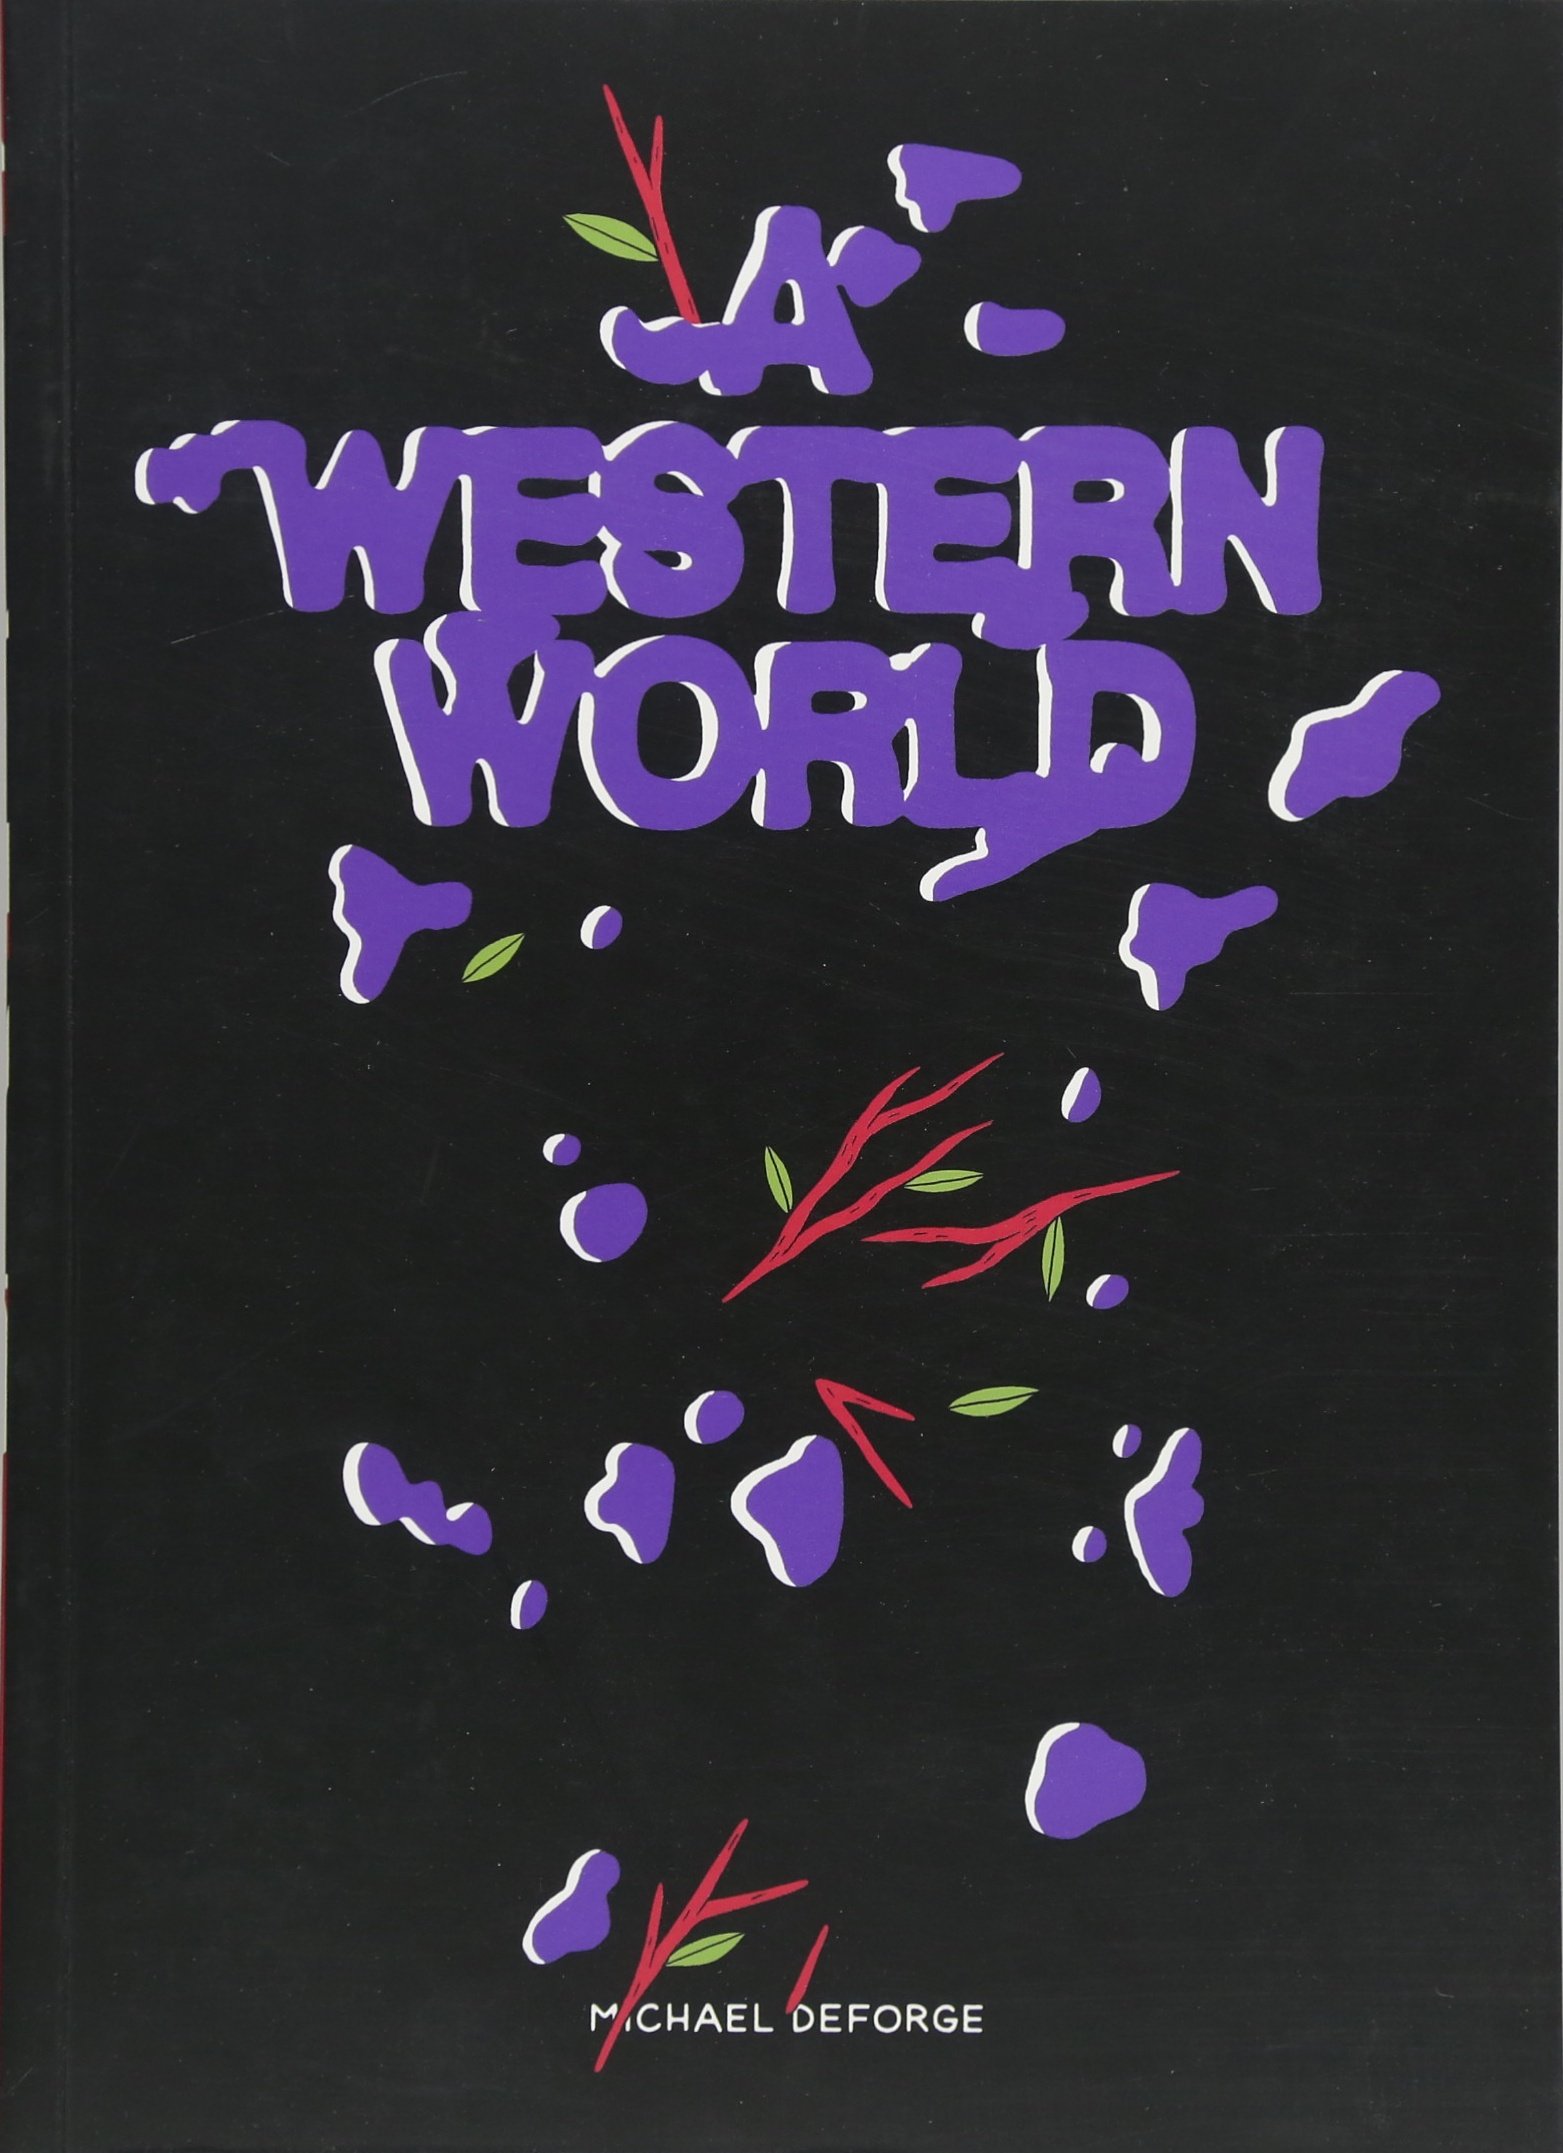 A Western World